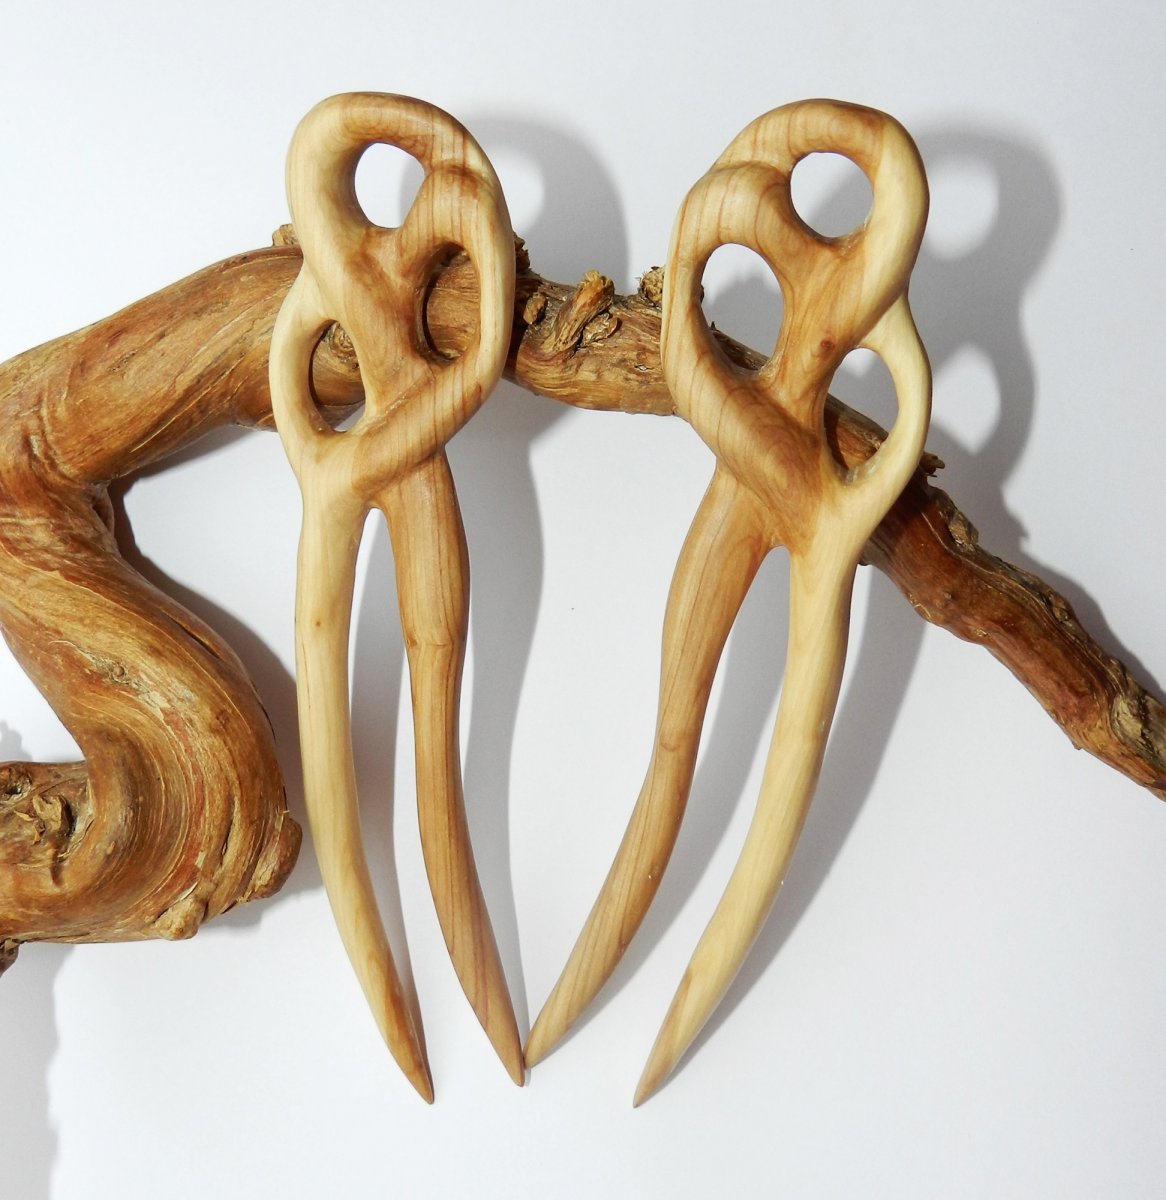 Китайская заколка-шпилька из дерева с натуральным янтарём в интернет-магазине янтаря